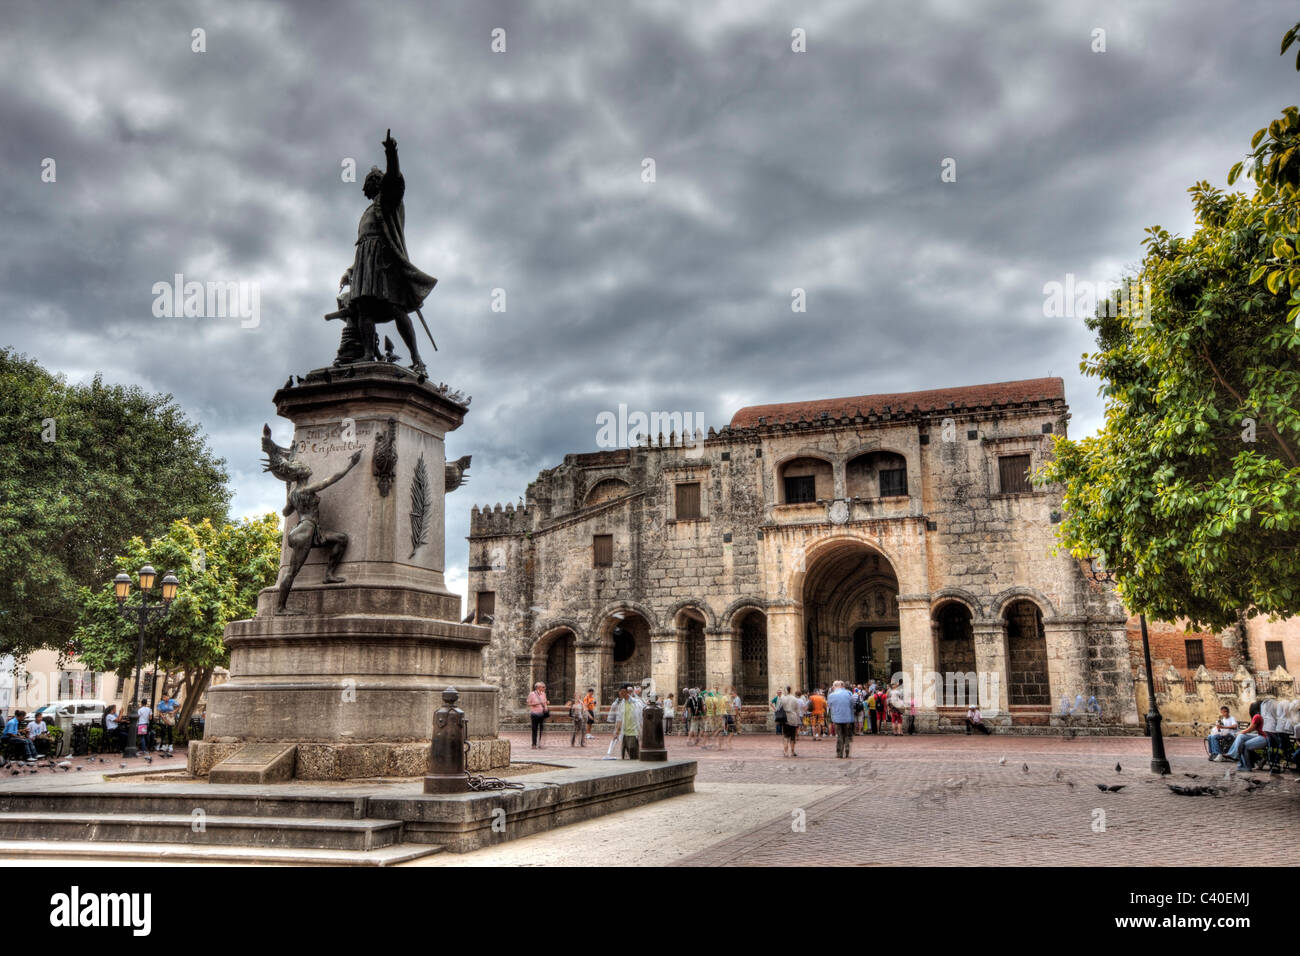 Plaza Colon with Columbus Memorial Statue and Cathedral, Santo Domingo, Dominican Republic Stock Photo